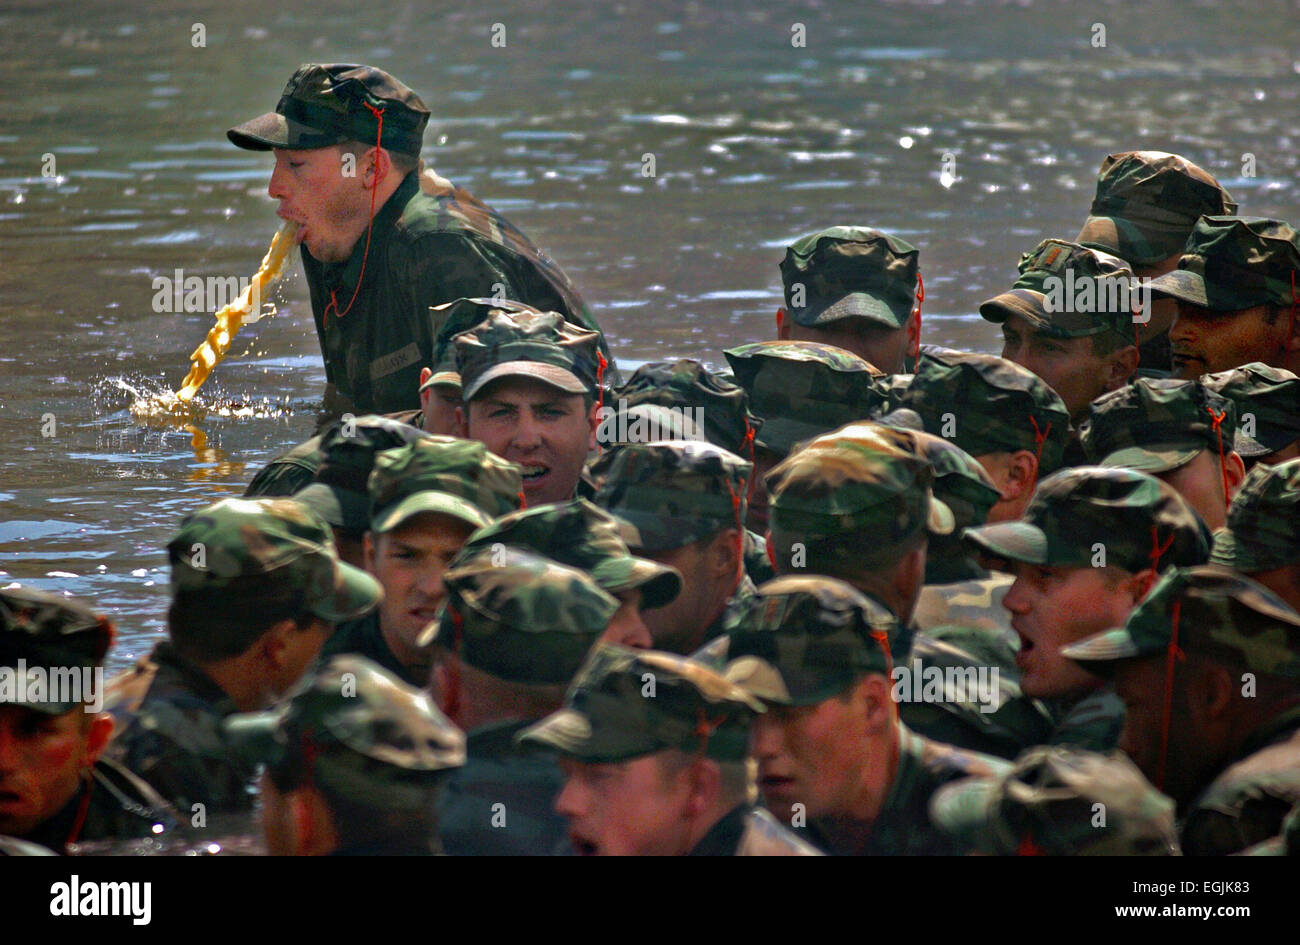 Un US Navy SEAL reclutare vomita durante l'Inferno settimana maggio 19, 2004 a Coronado, CA. La guarnizione di formazione dura sei mesi e inferno è la settimana di cinque giorni e mezzo di formazione continua con molto poco sonno progettato per spingere le reclute per i limiti. Foto Stock